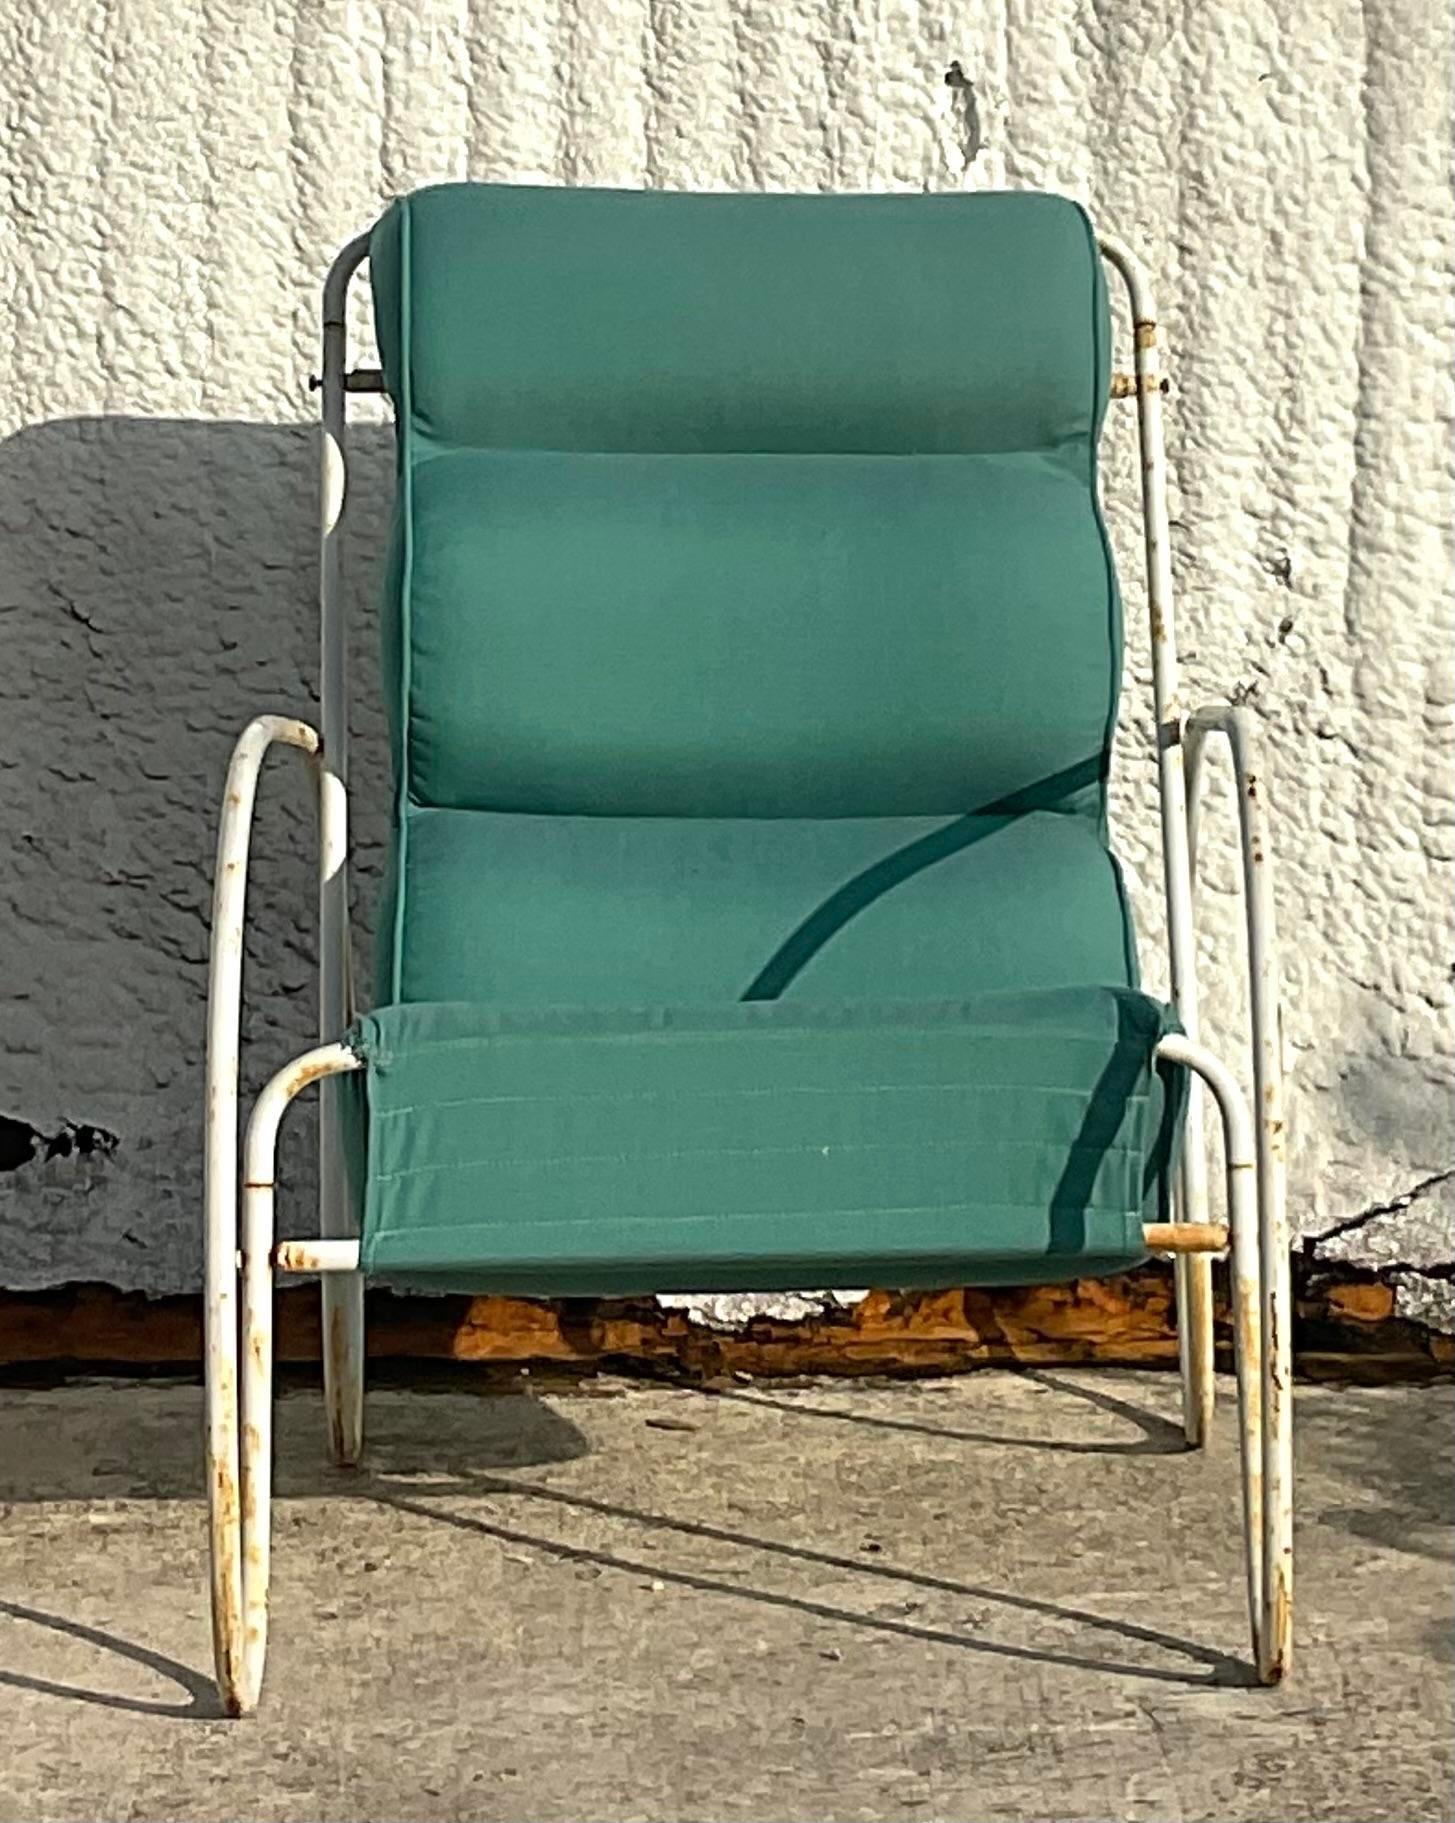 Une exceptionnelle chaise longue vintage Boho pour l'extérieur. A la manière d'Eileen Gray. Un cadre fantaisiste en fer forgé avec un coussin tufté. Parfait pour l'intérieur et l'extérieur. C'est vous qui décidez ! Acquis d'une propriété de Palm